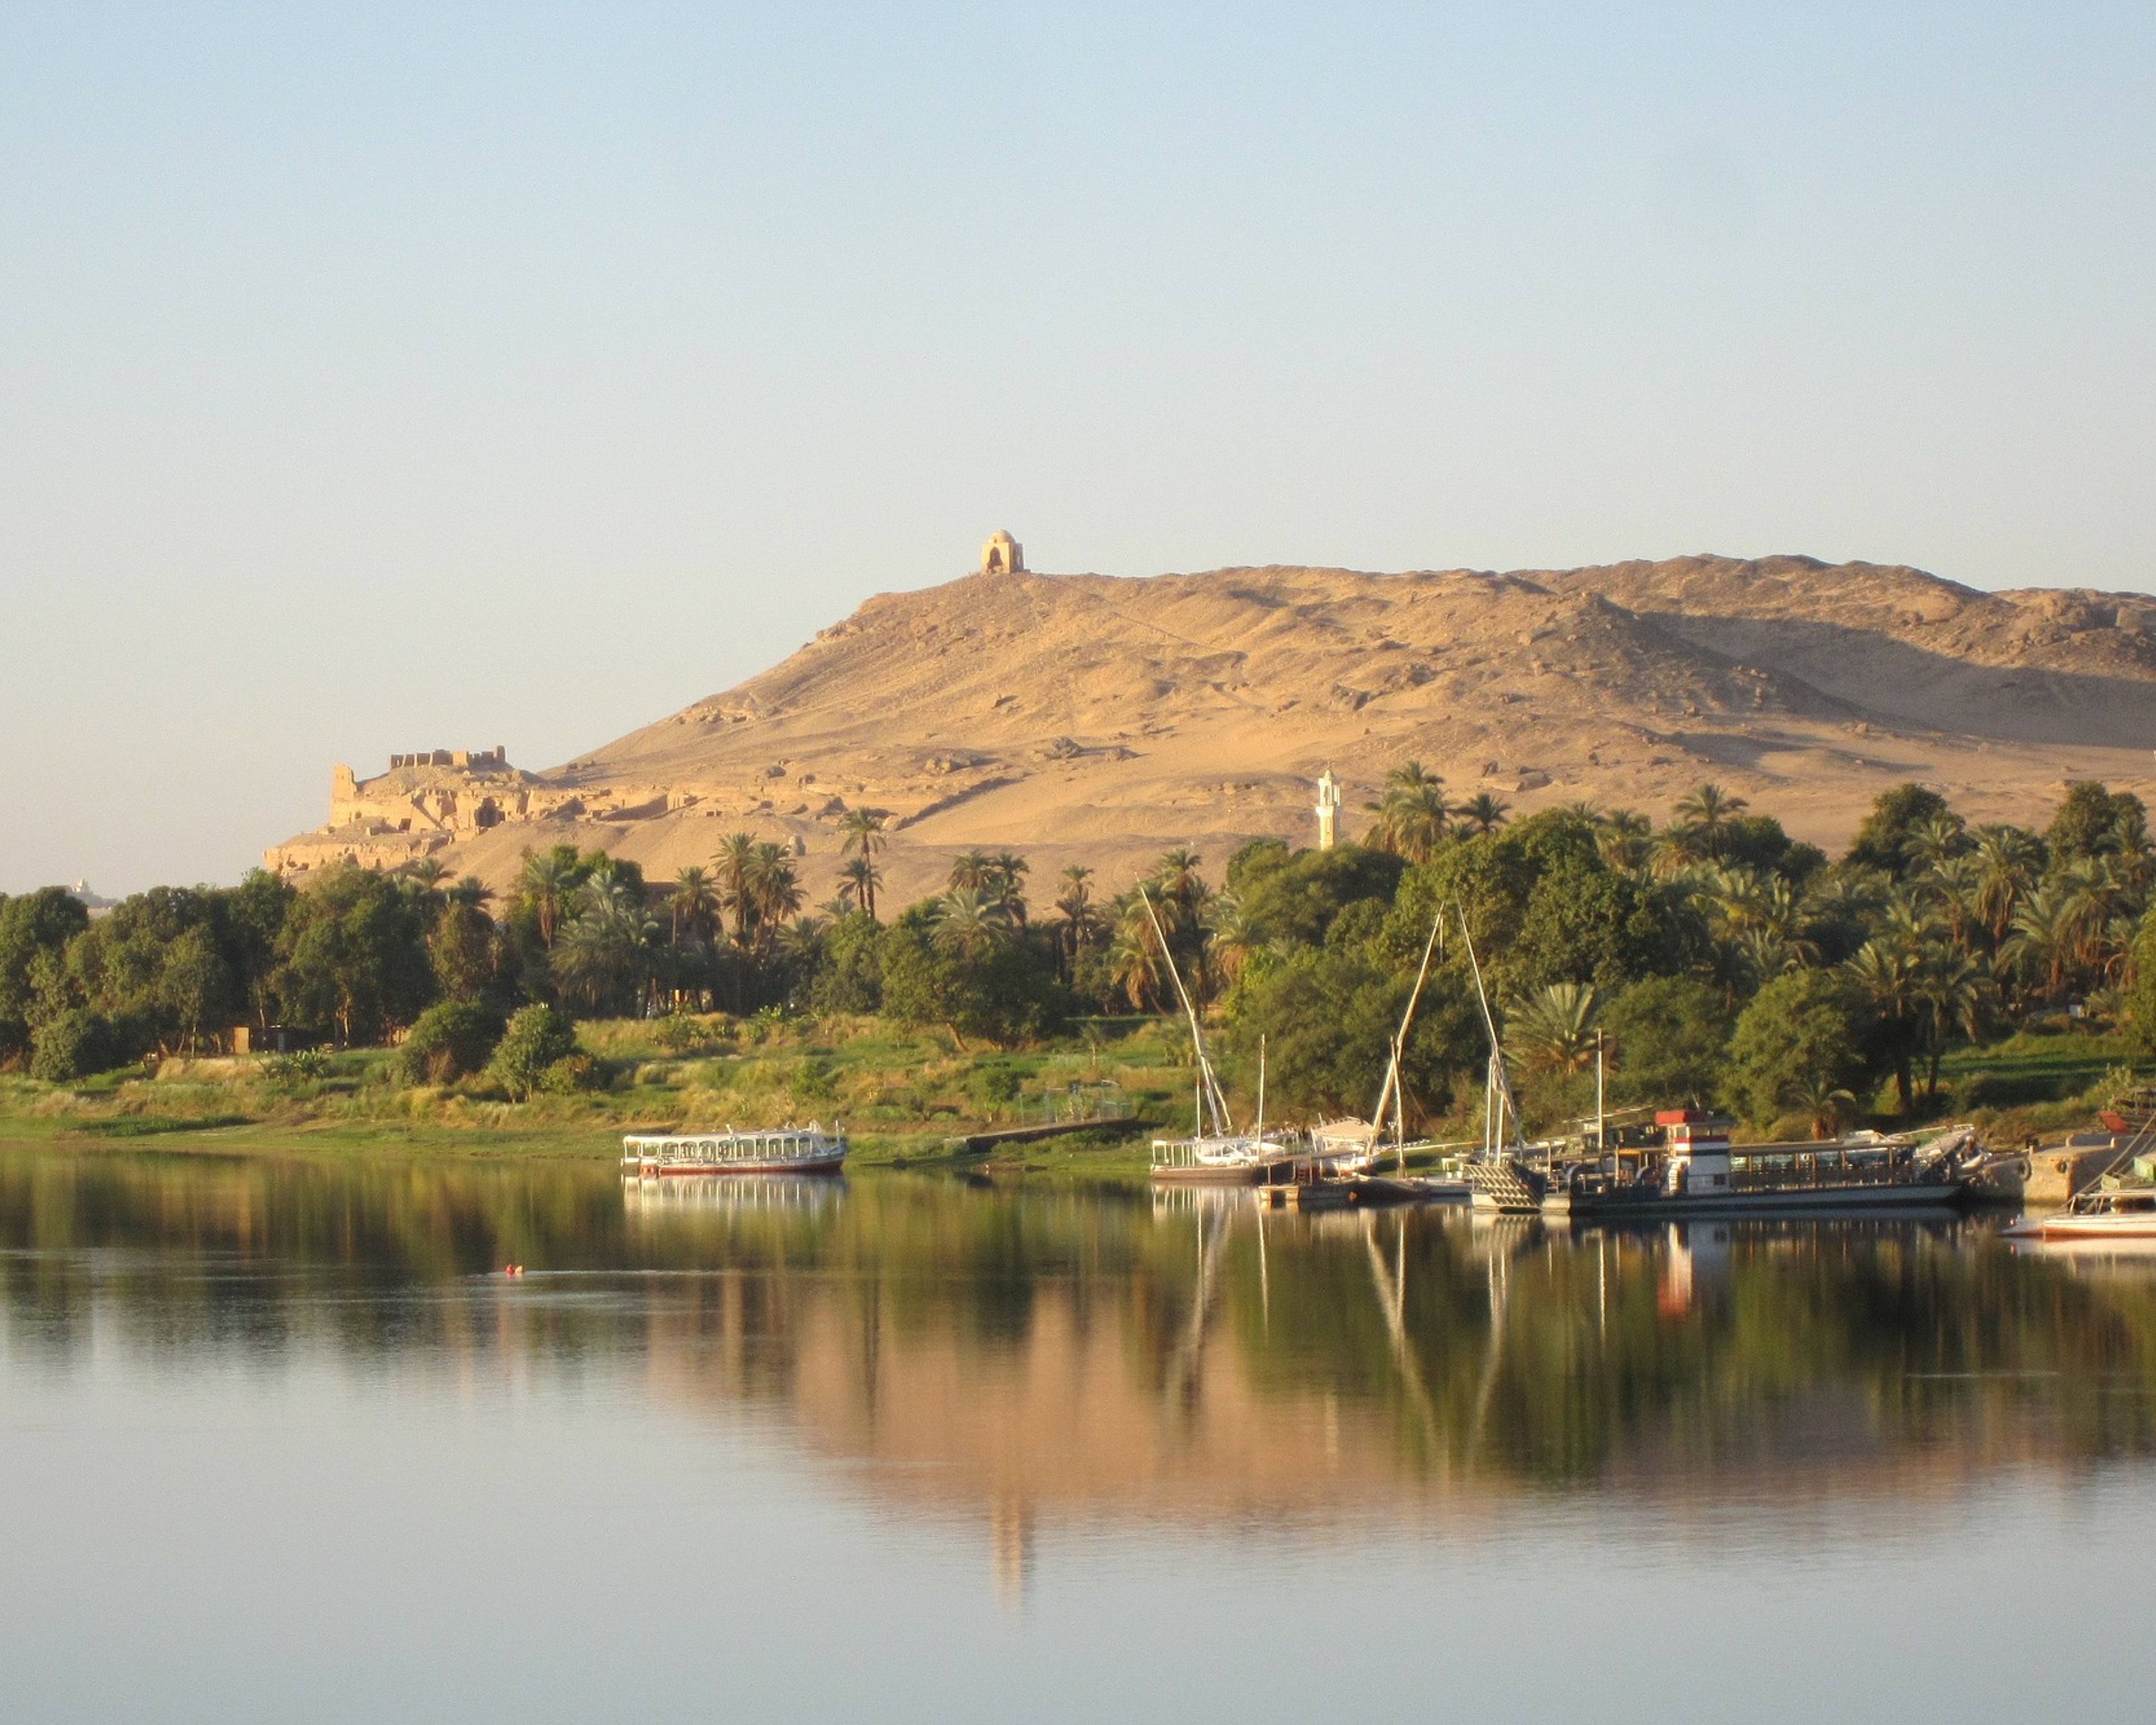 Navigare sul Nilo alla scoperta della terra dei faraoni